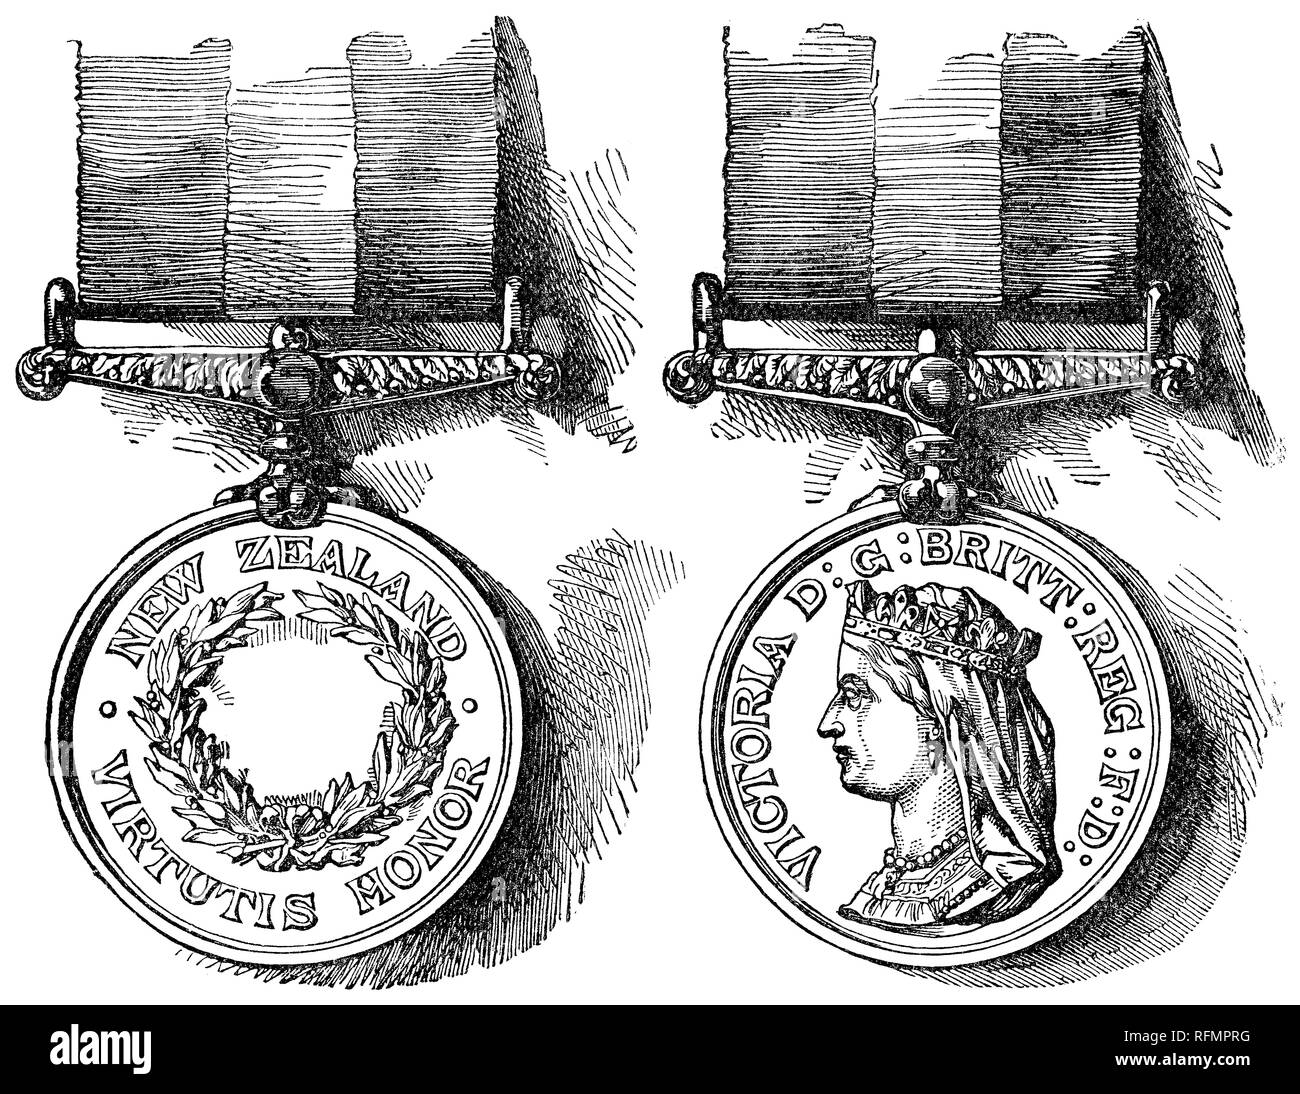 1888 viktorianischen Gravur der Vorder- und Rückseiten der Neuseeland Medaille für Verdienste während des Neuseeländischen Kriege (oder Maori Kriege, Land Wars) von 1845-47 und 1860-66. Stockfoto